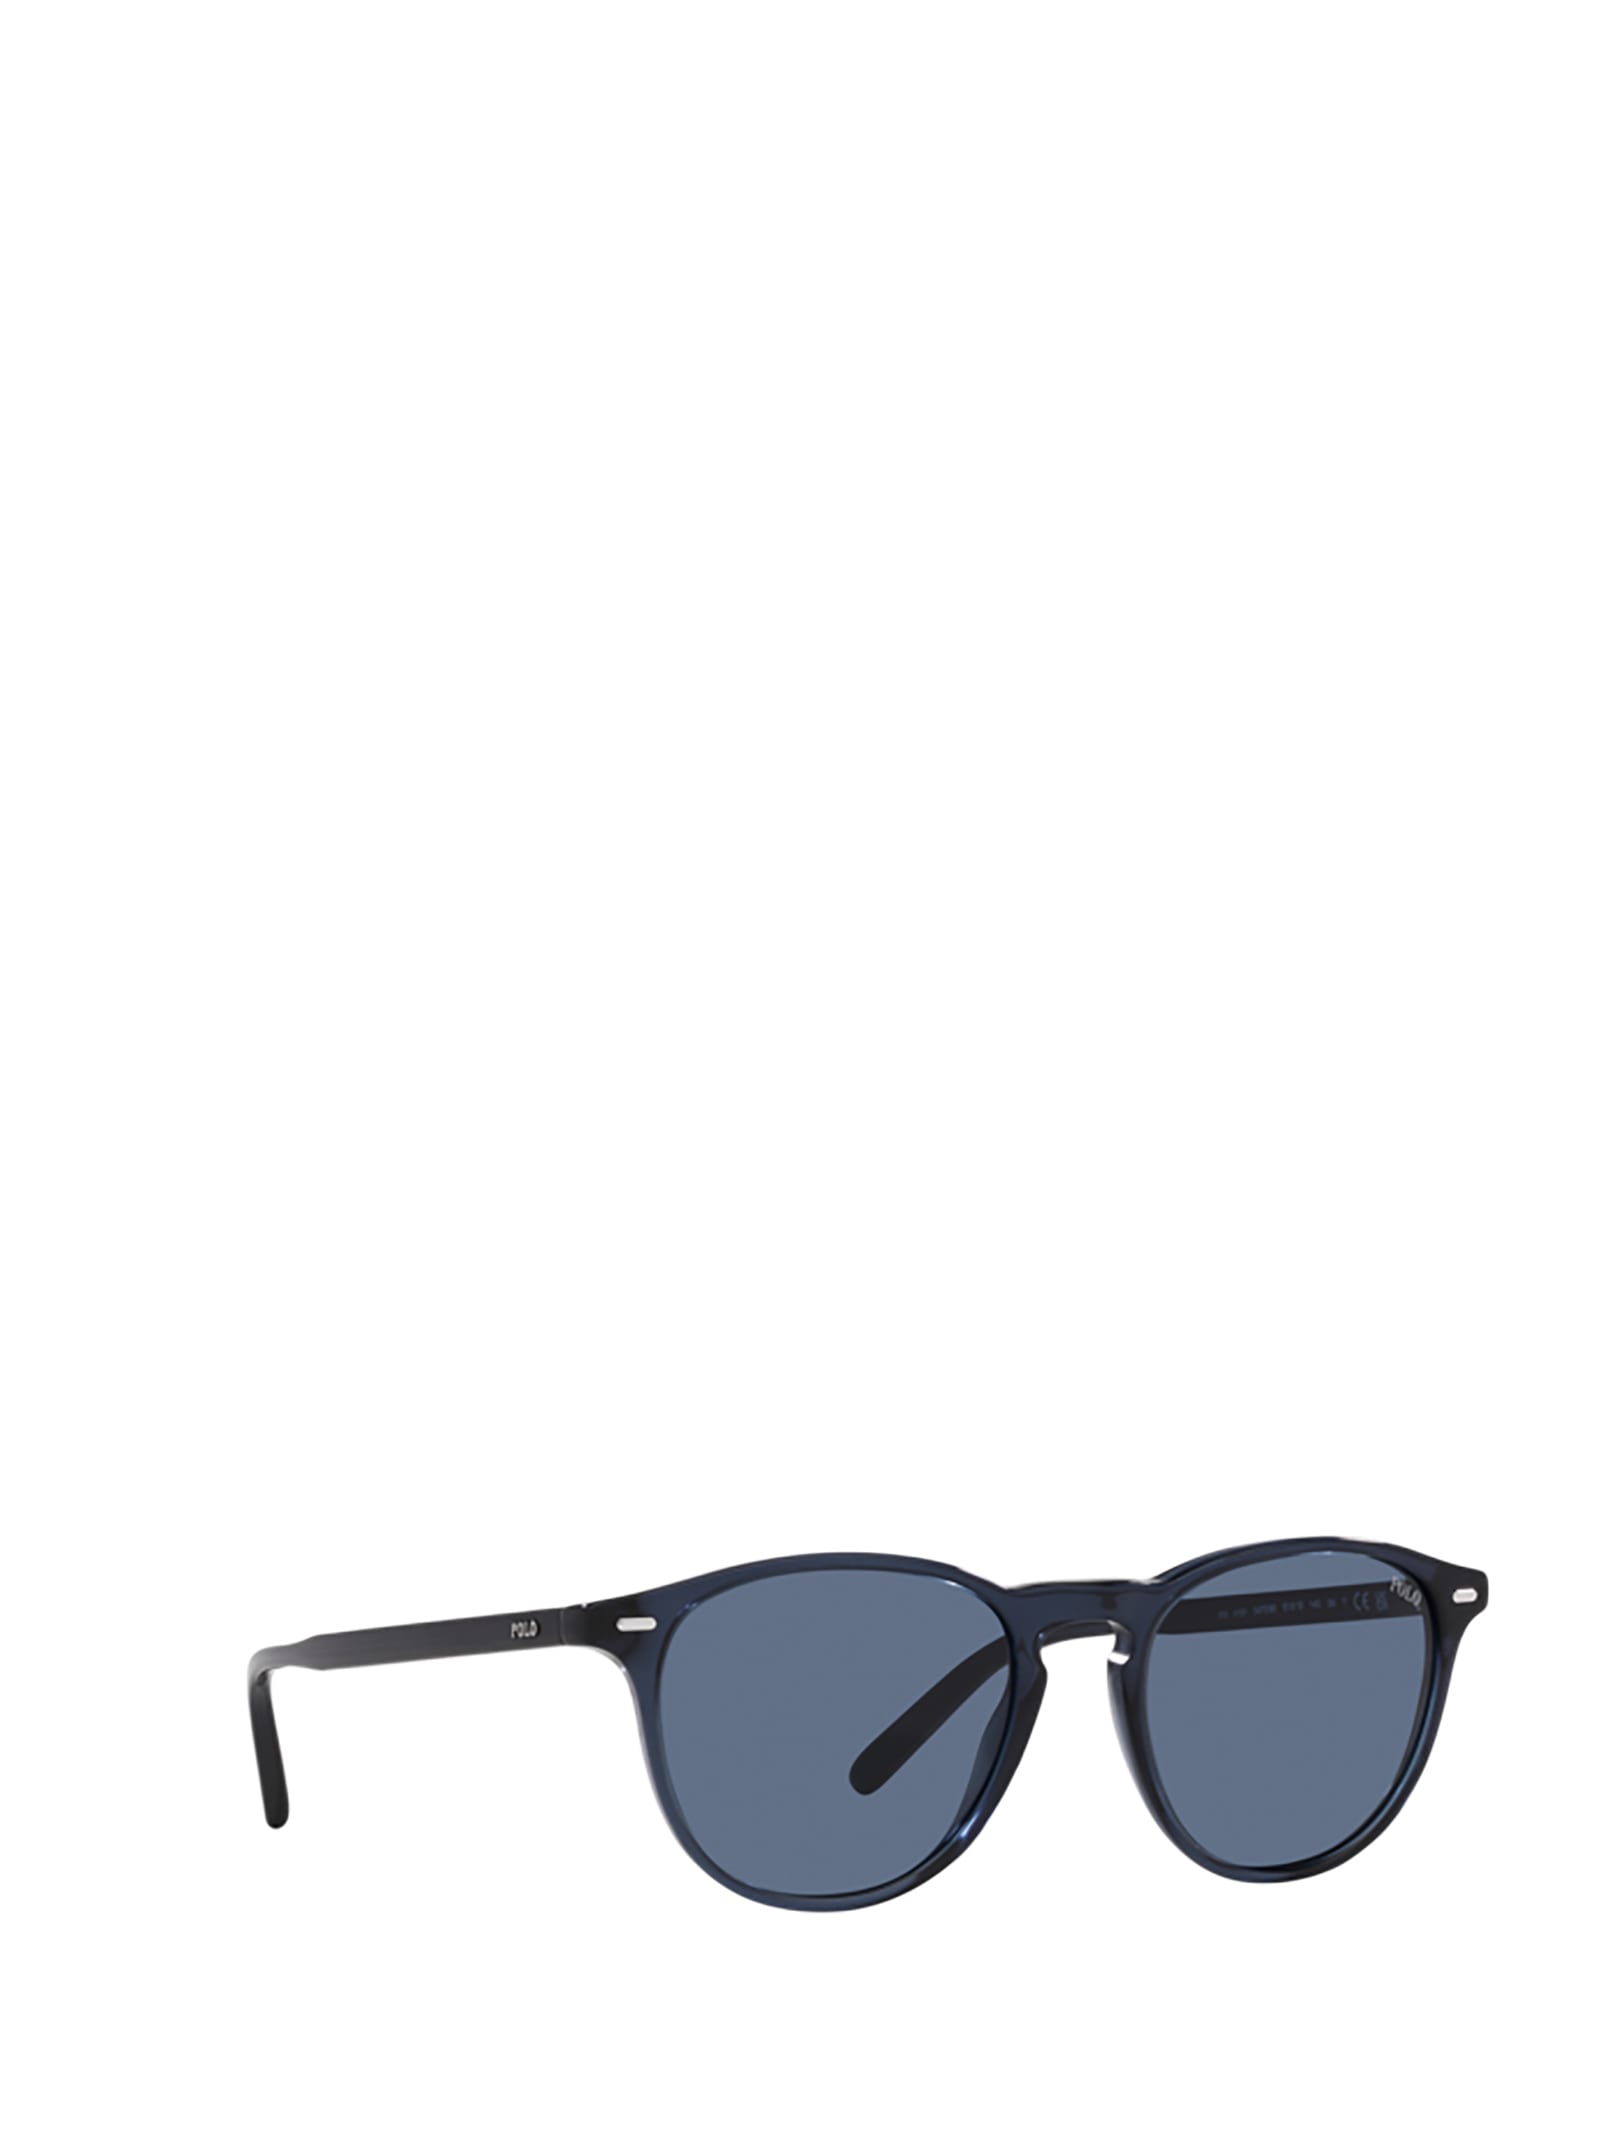 Shop Polo Ralph Lauren Ph4181 Shiny Transparent Navy Blue Sunglasses